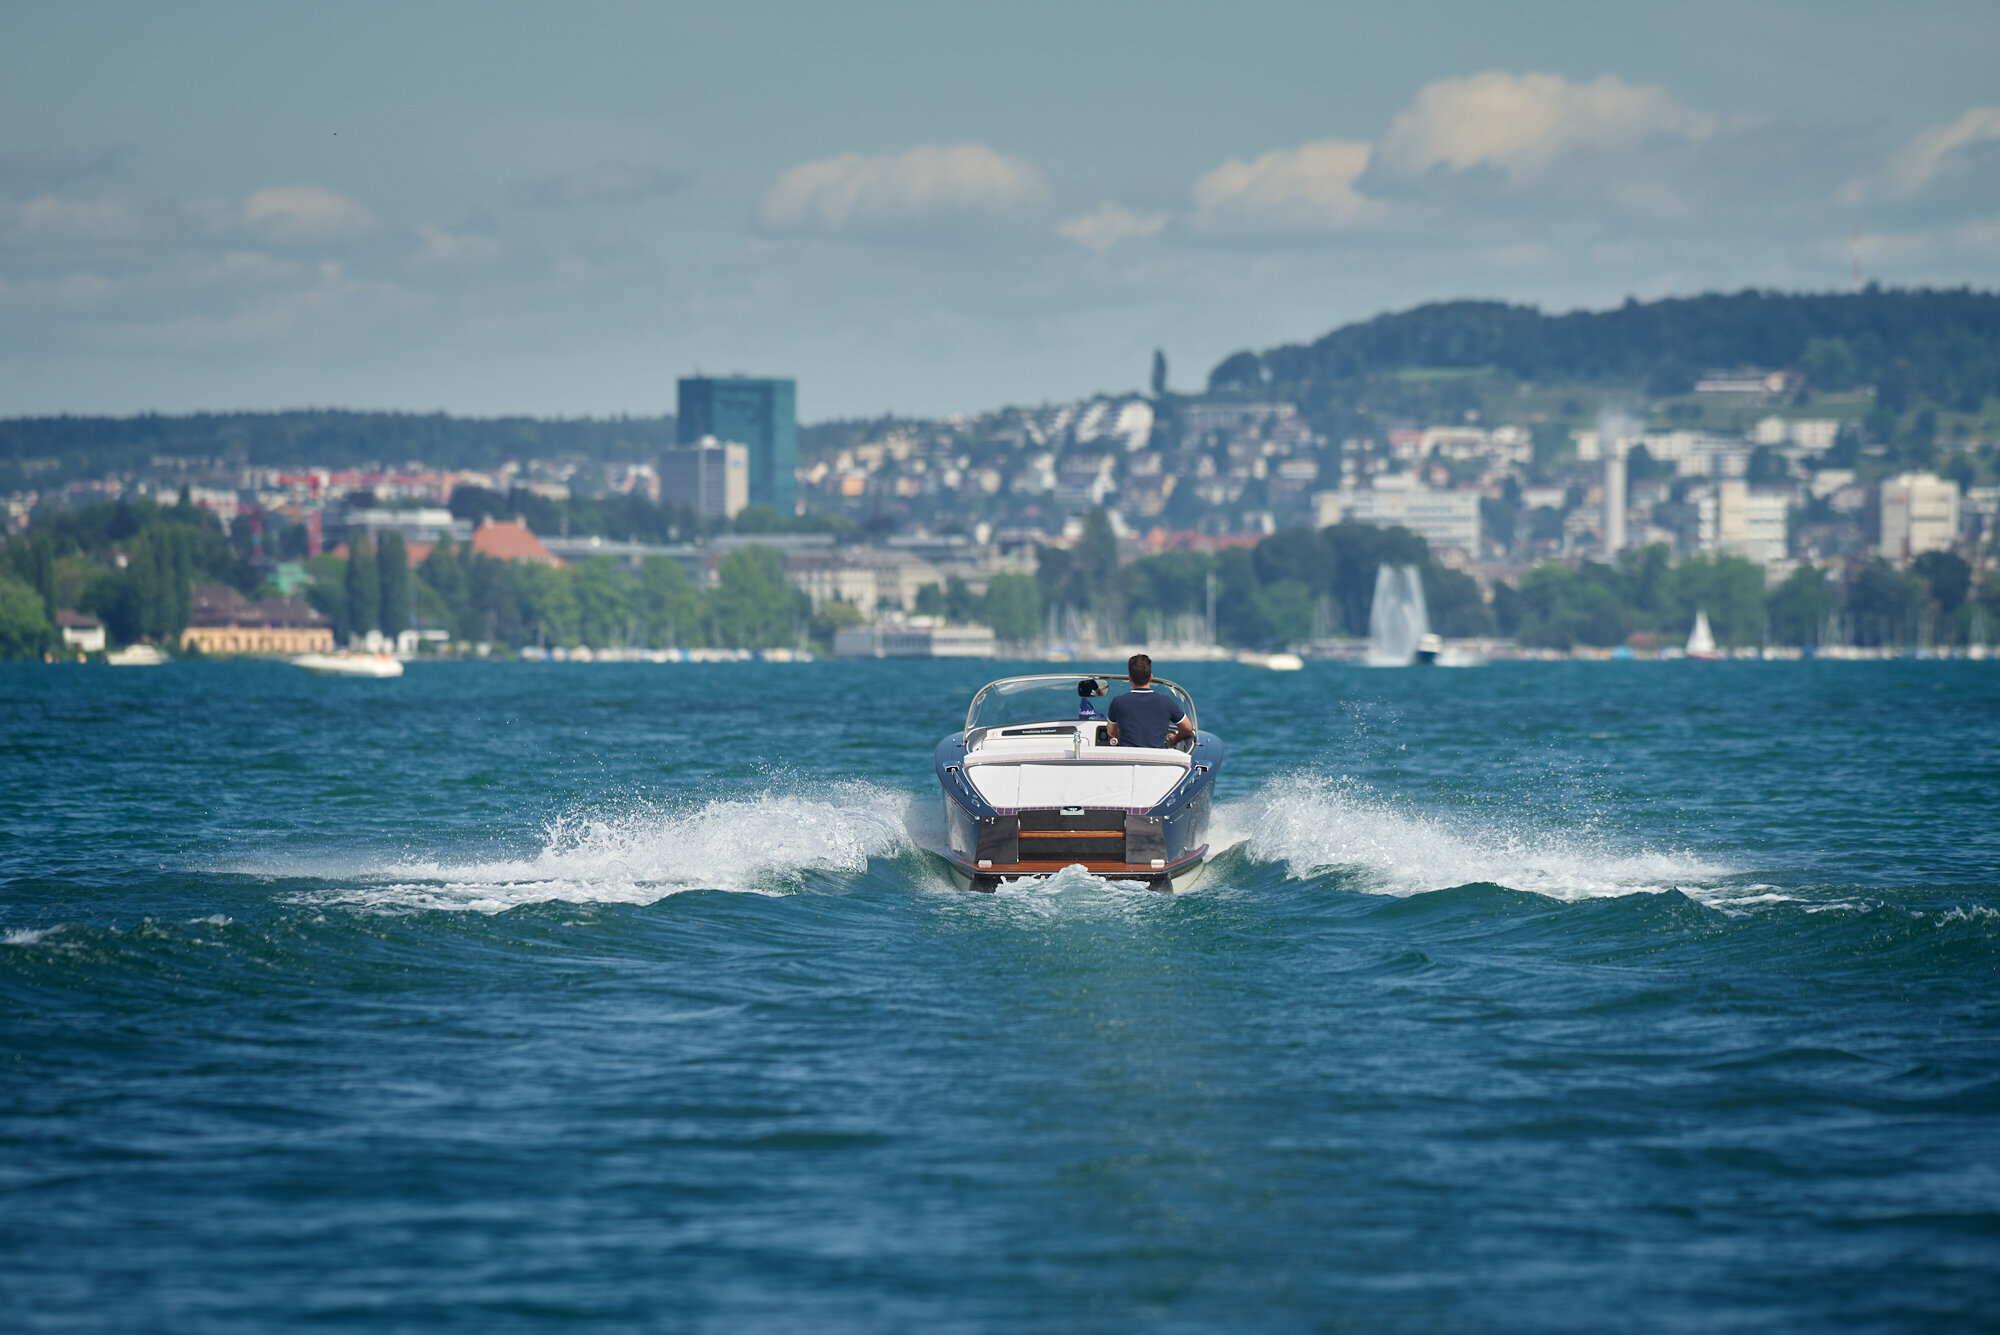 IWC Schaffhausen feiert das 100-jährige Jubiläum des Schweizer Bootsherstellers Boesch mit der Aquatimer Automatic Edition "Boesch".
Fotografiert von Jürg Kaufmann, einem renommierten Outdoor- und people Fotografen mit einer grossen Leidenschaft für das Meer, und der m